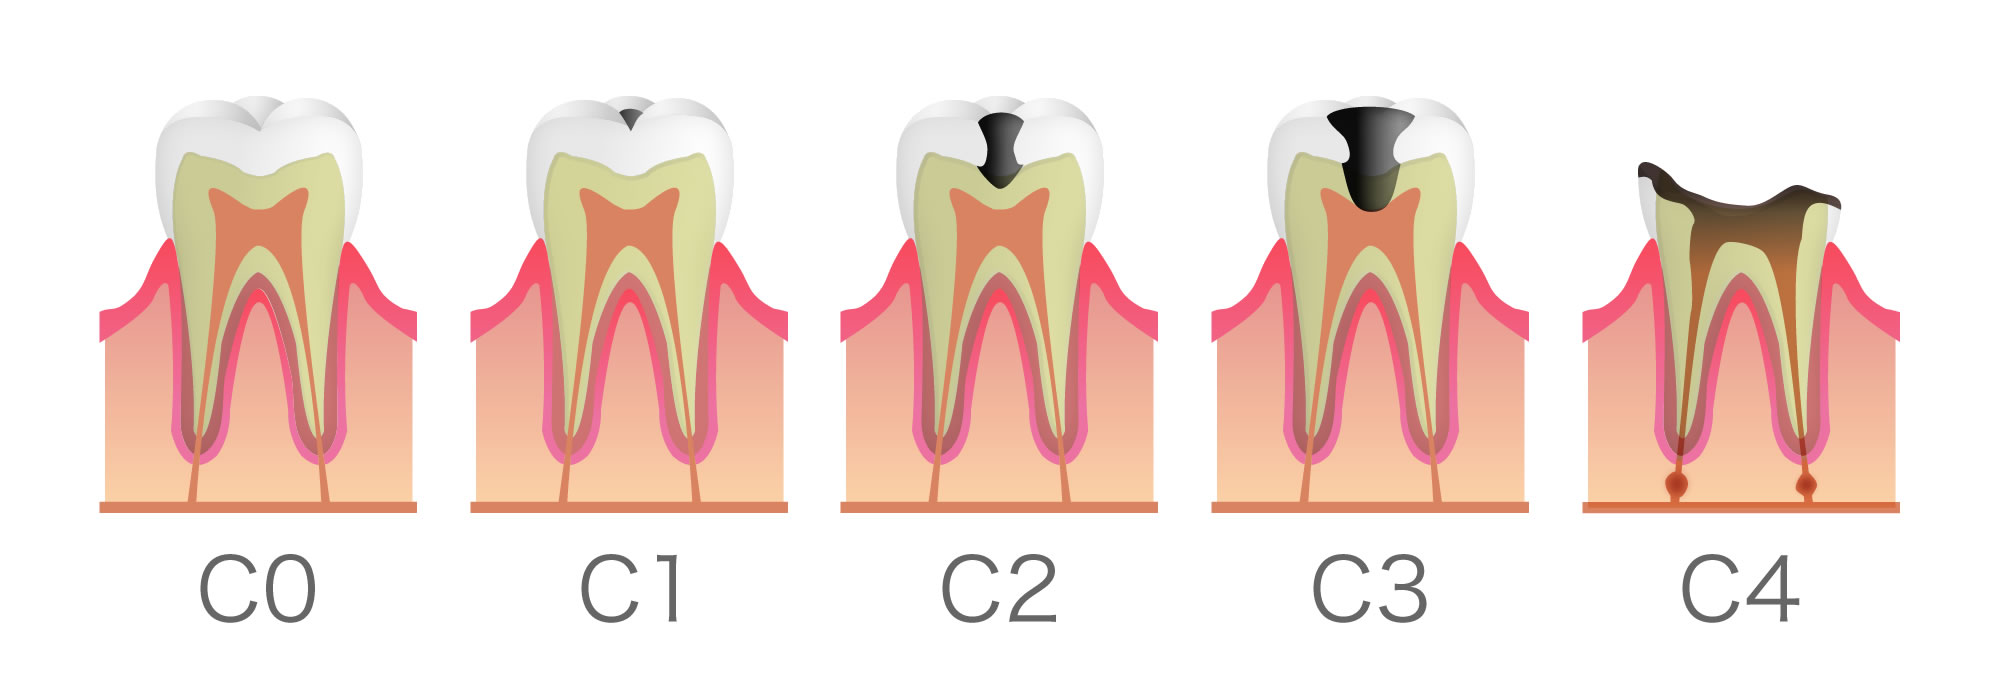 健康な歯の断面図